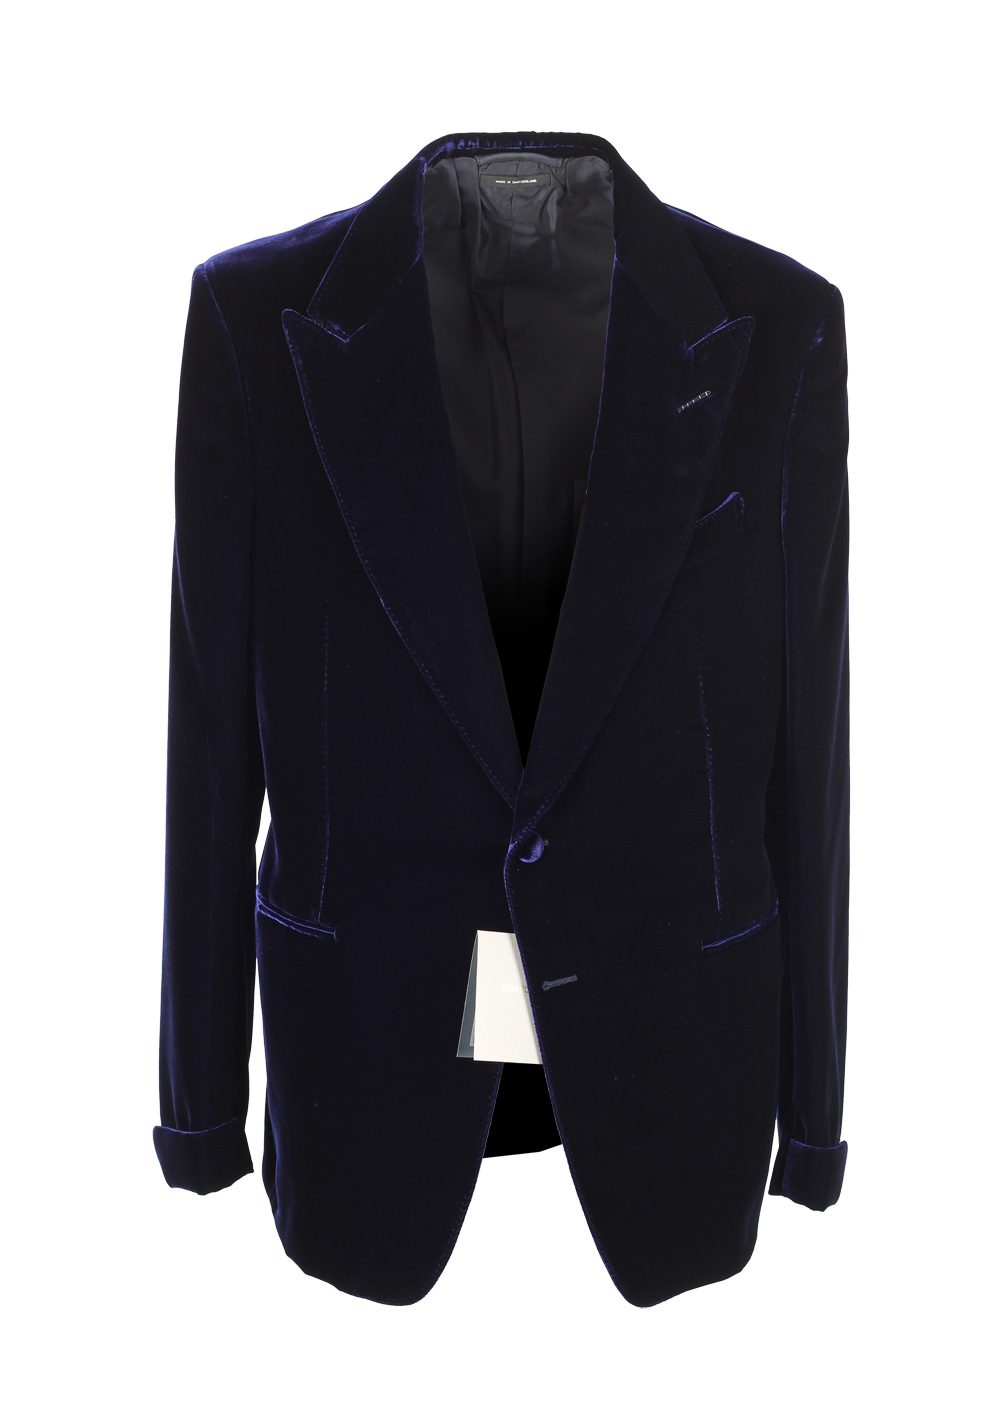 TOM FORD Shelton Blue Sport Coat Velvet Tuxedo Dinner Jacket Size 52L ...